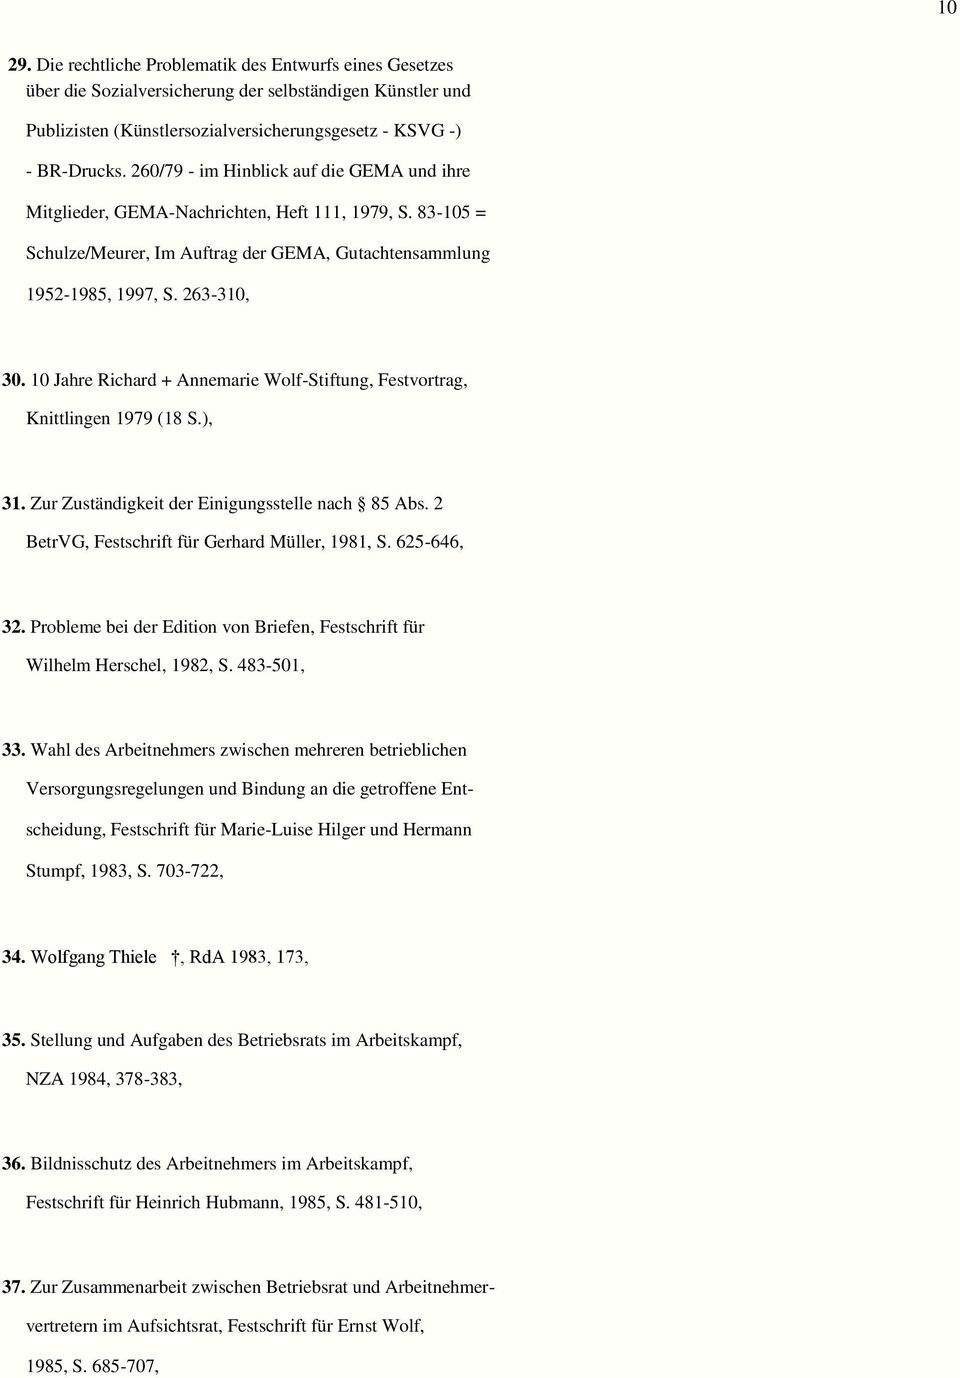 10 Jahre Richard + Annemarie Wolf-Stiftung, Festvortrag, Knittlingen 1979 (18 S.), 31. Zur Zuständigkeit der Einigungsstelle nach 85 Abs. 2 BetrVG, Festschrift für Gerhard Müller, 1981, S.